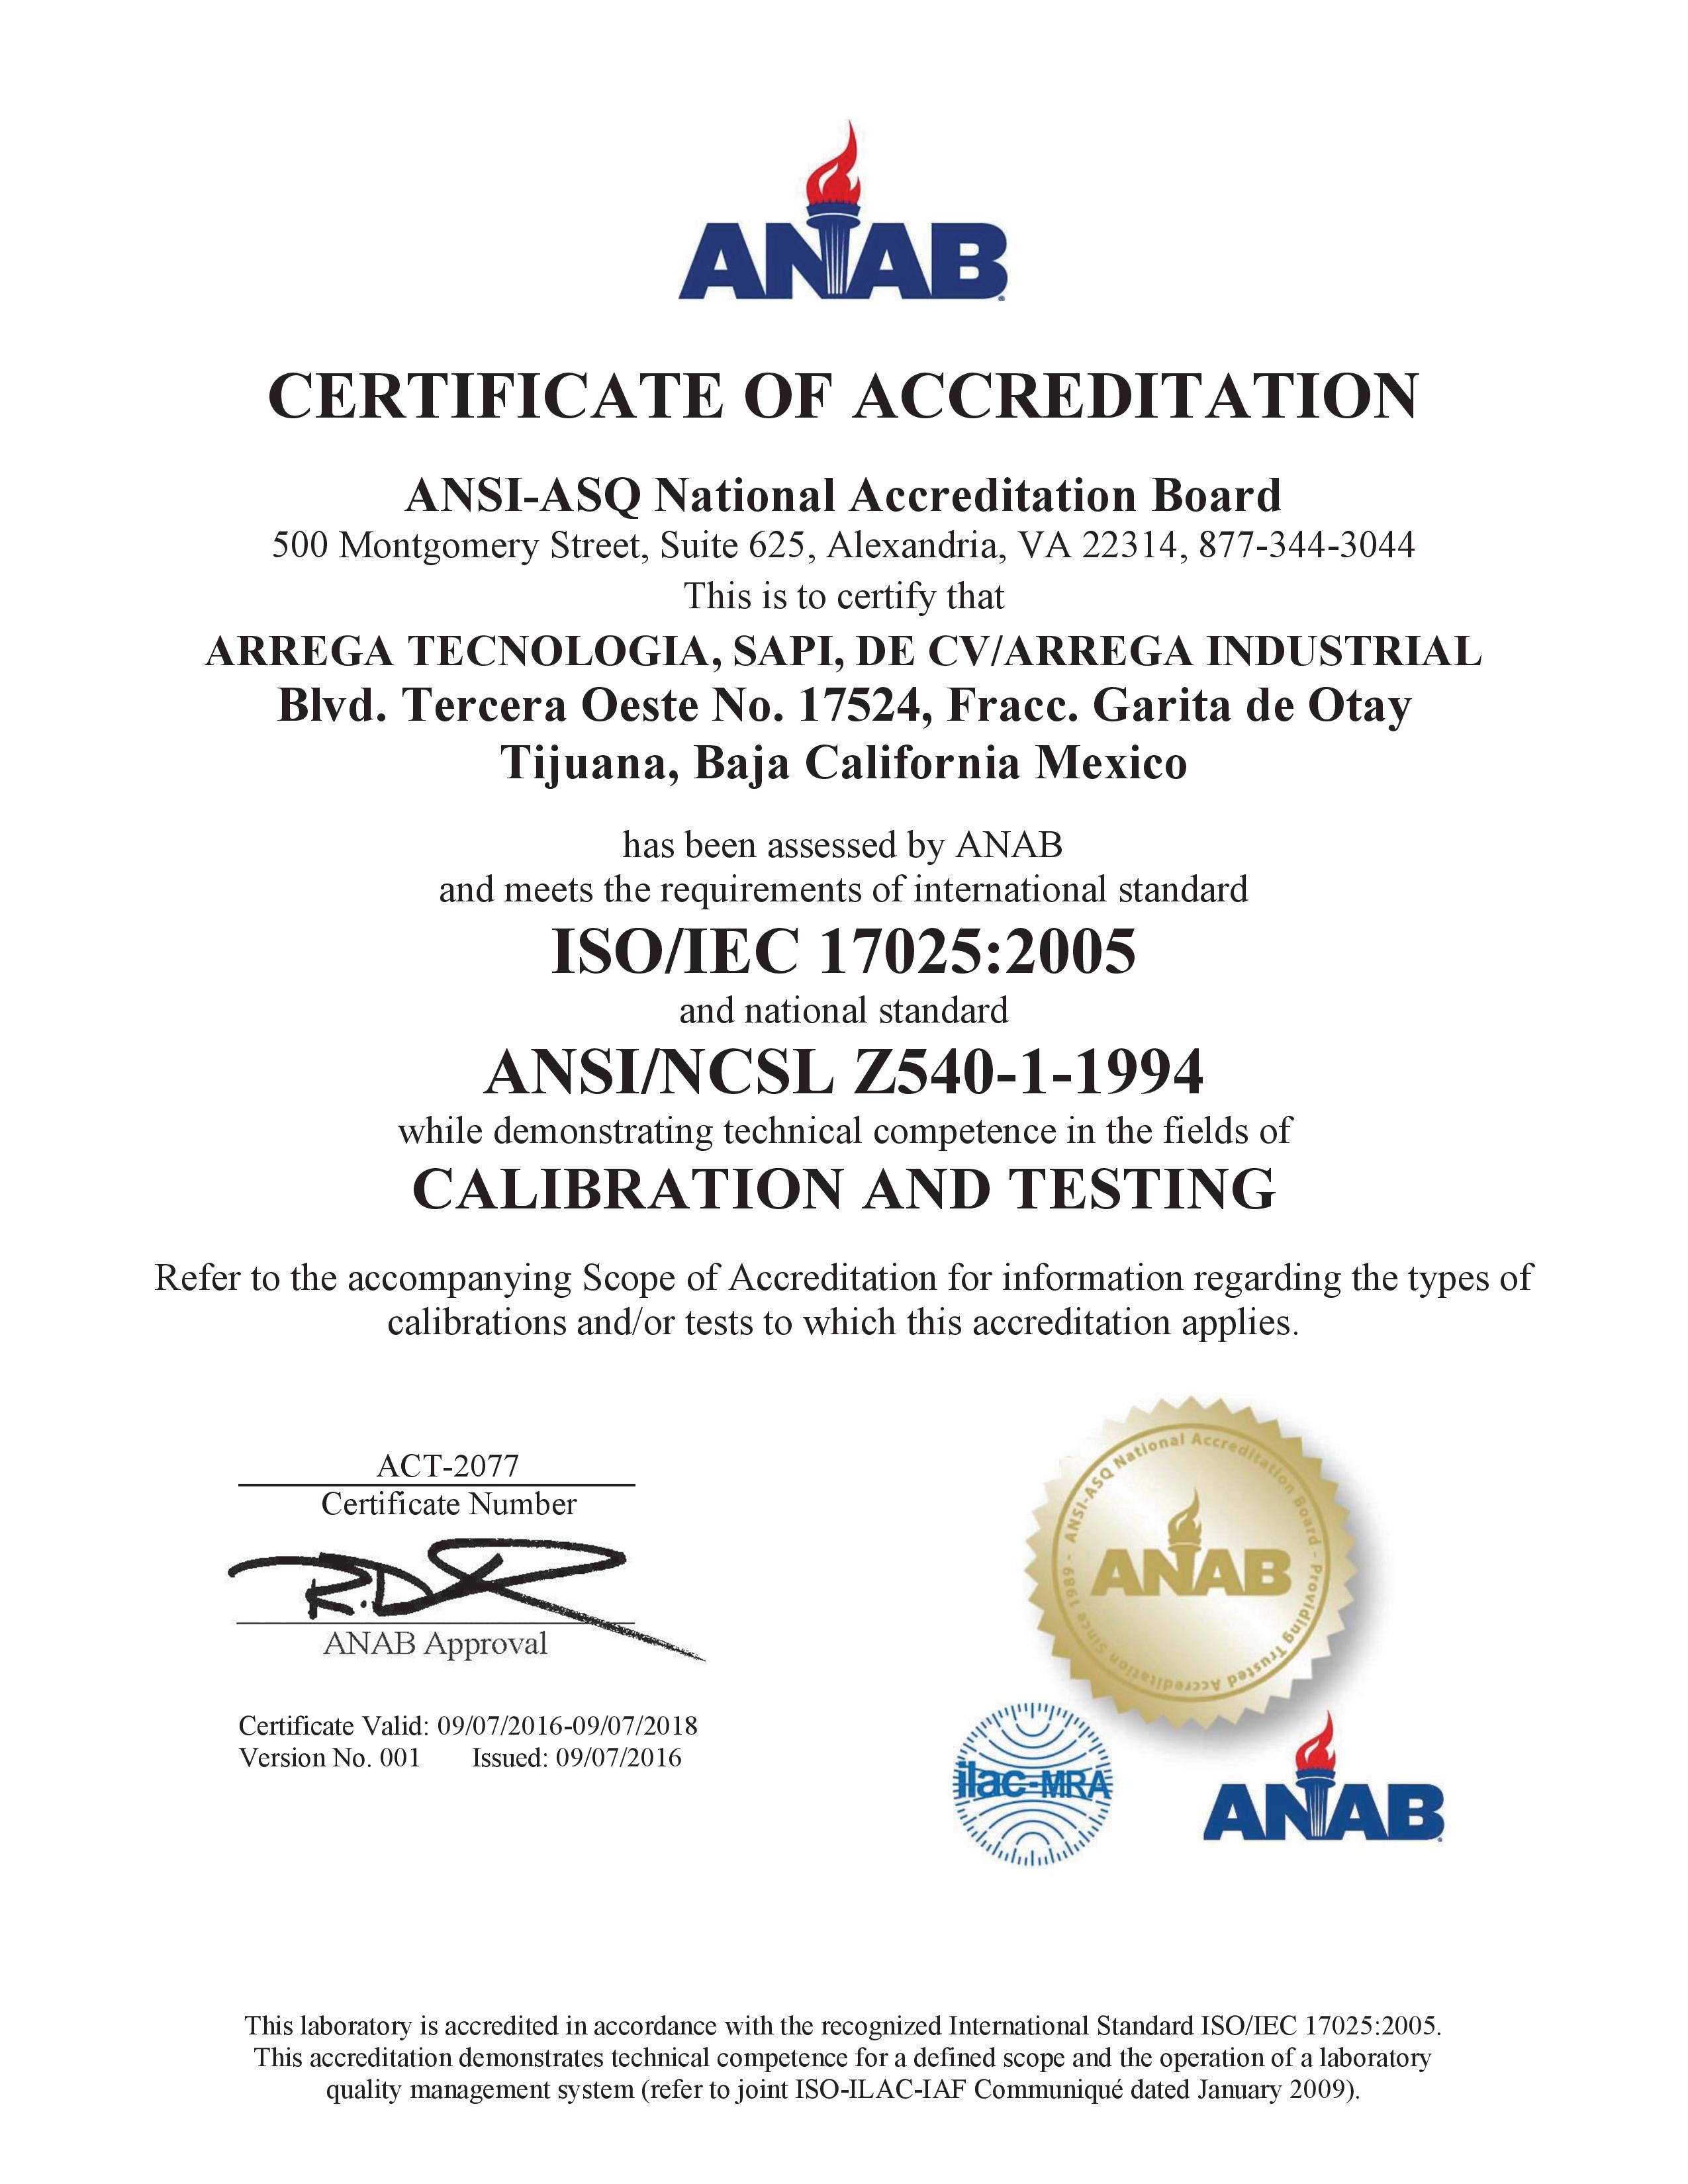 Certificado de Acreditación como Laboratorio de Calibración